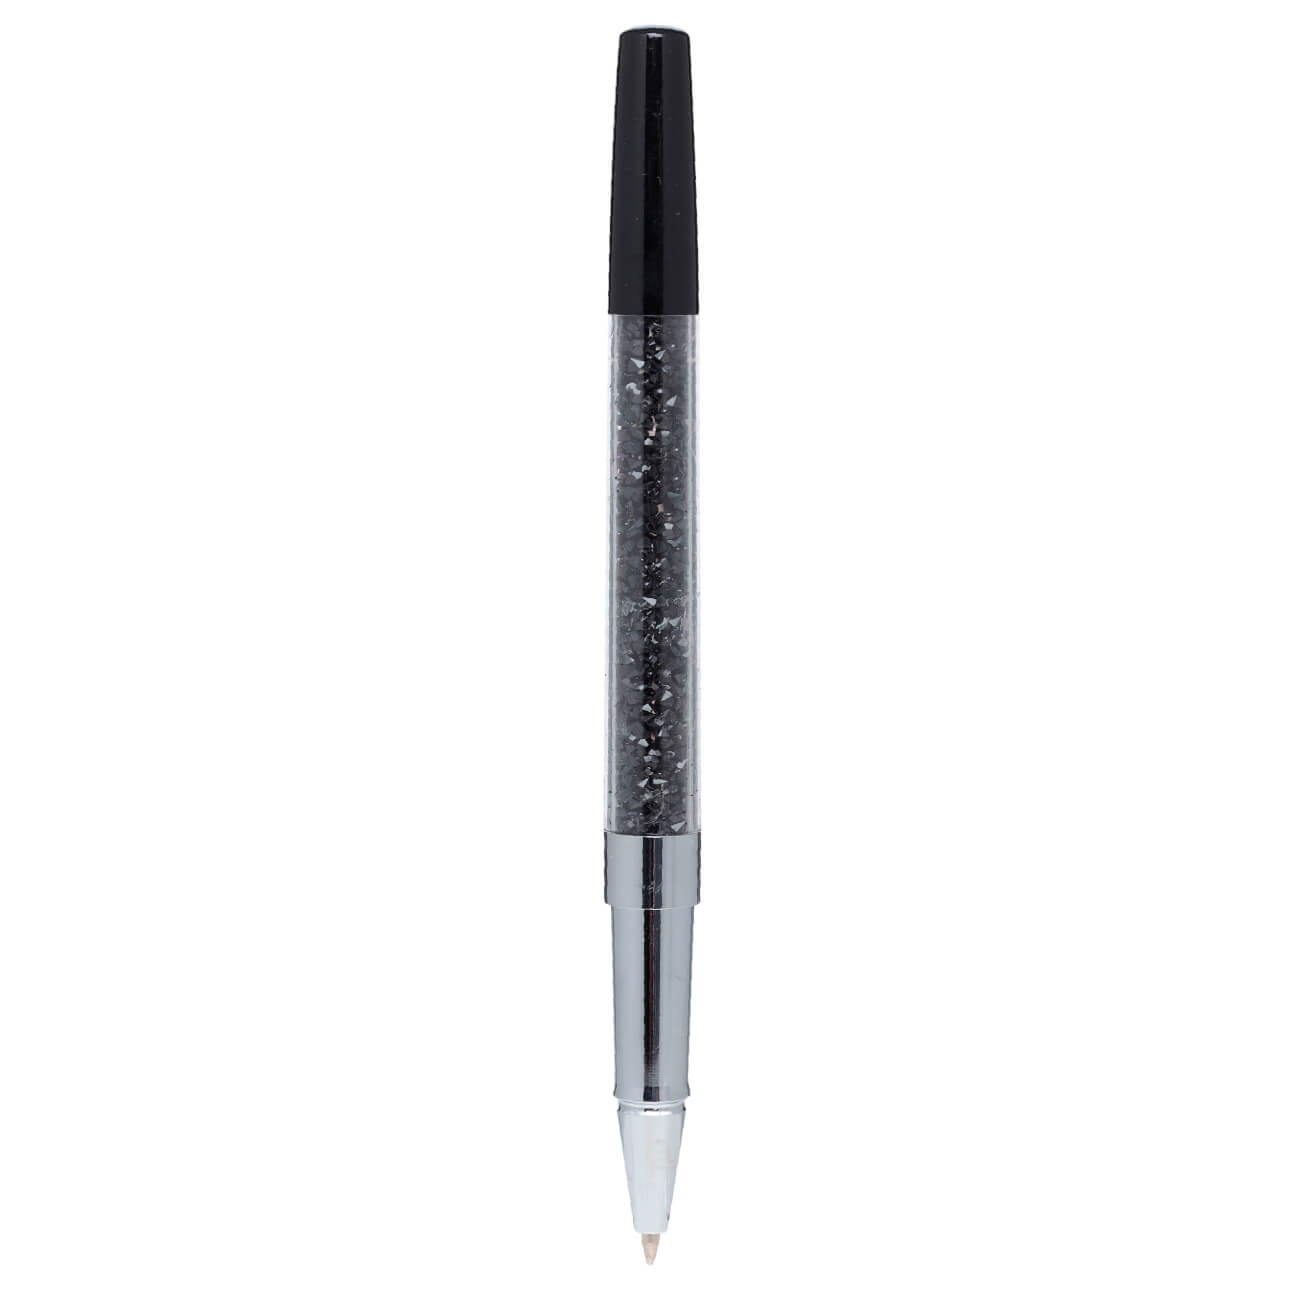 Ручка гелевая, 15 см, сталь, черная, Кристаллы, Draw cristal